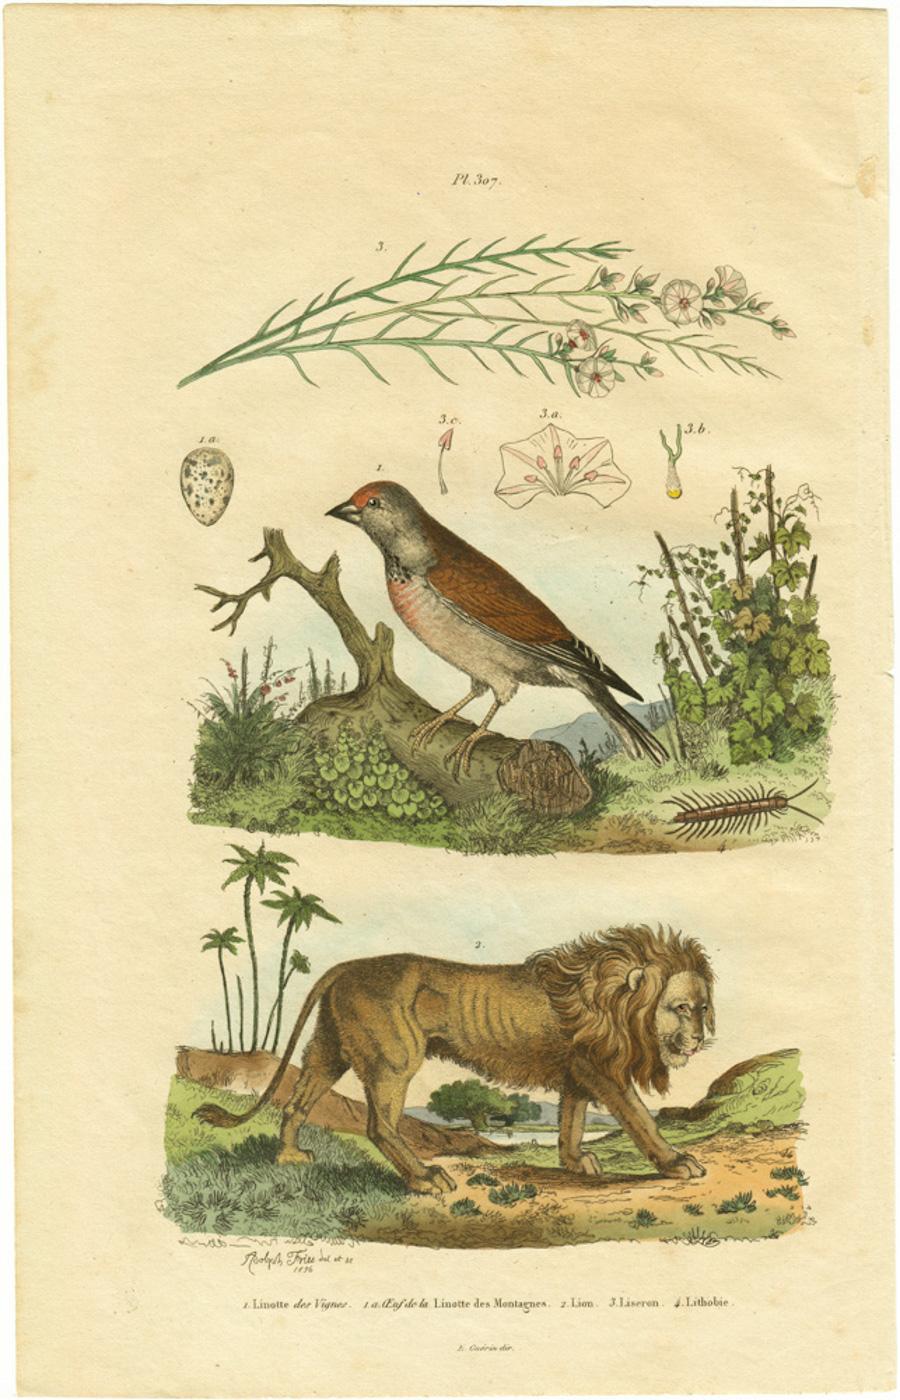 Adolph Fries Animal Print - Linotte des Vignes / Oeuf de la Linotte des Montagnes  / Lion / Liseron